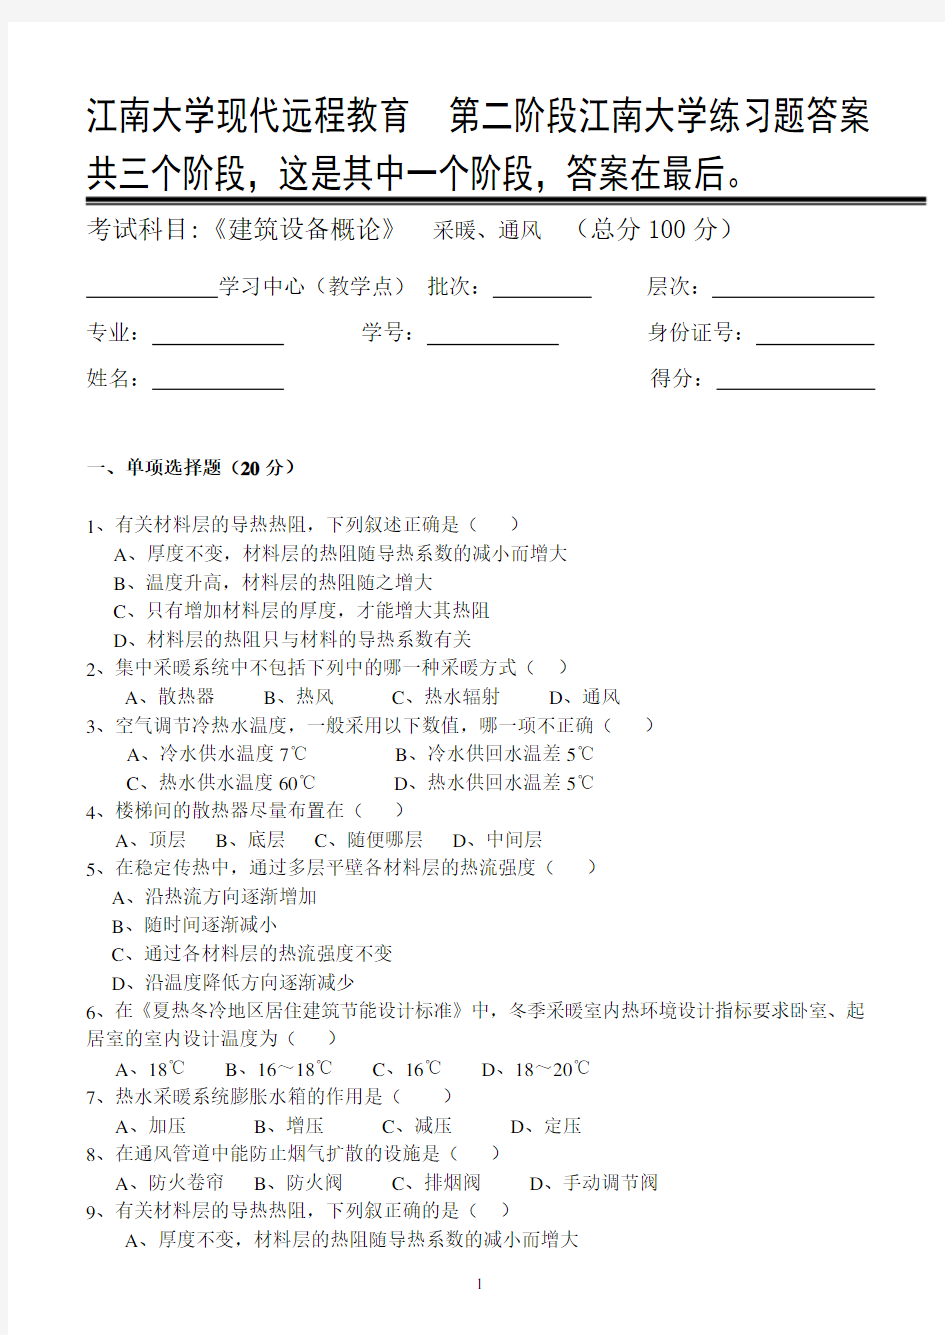 建筑设备概论第2阶段江南大学练习题答案  共三个阶段,这是其中一个阶段,答案在最后。2b